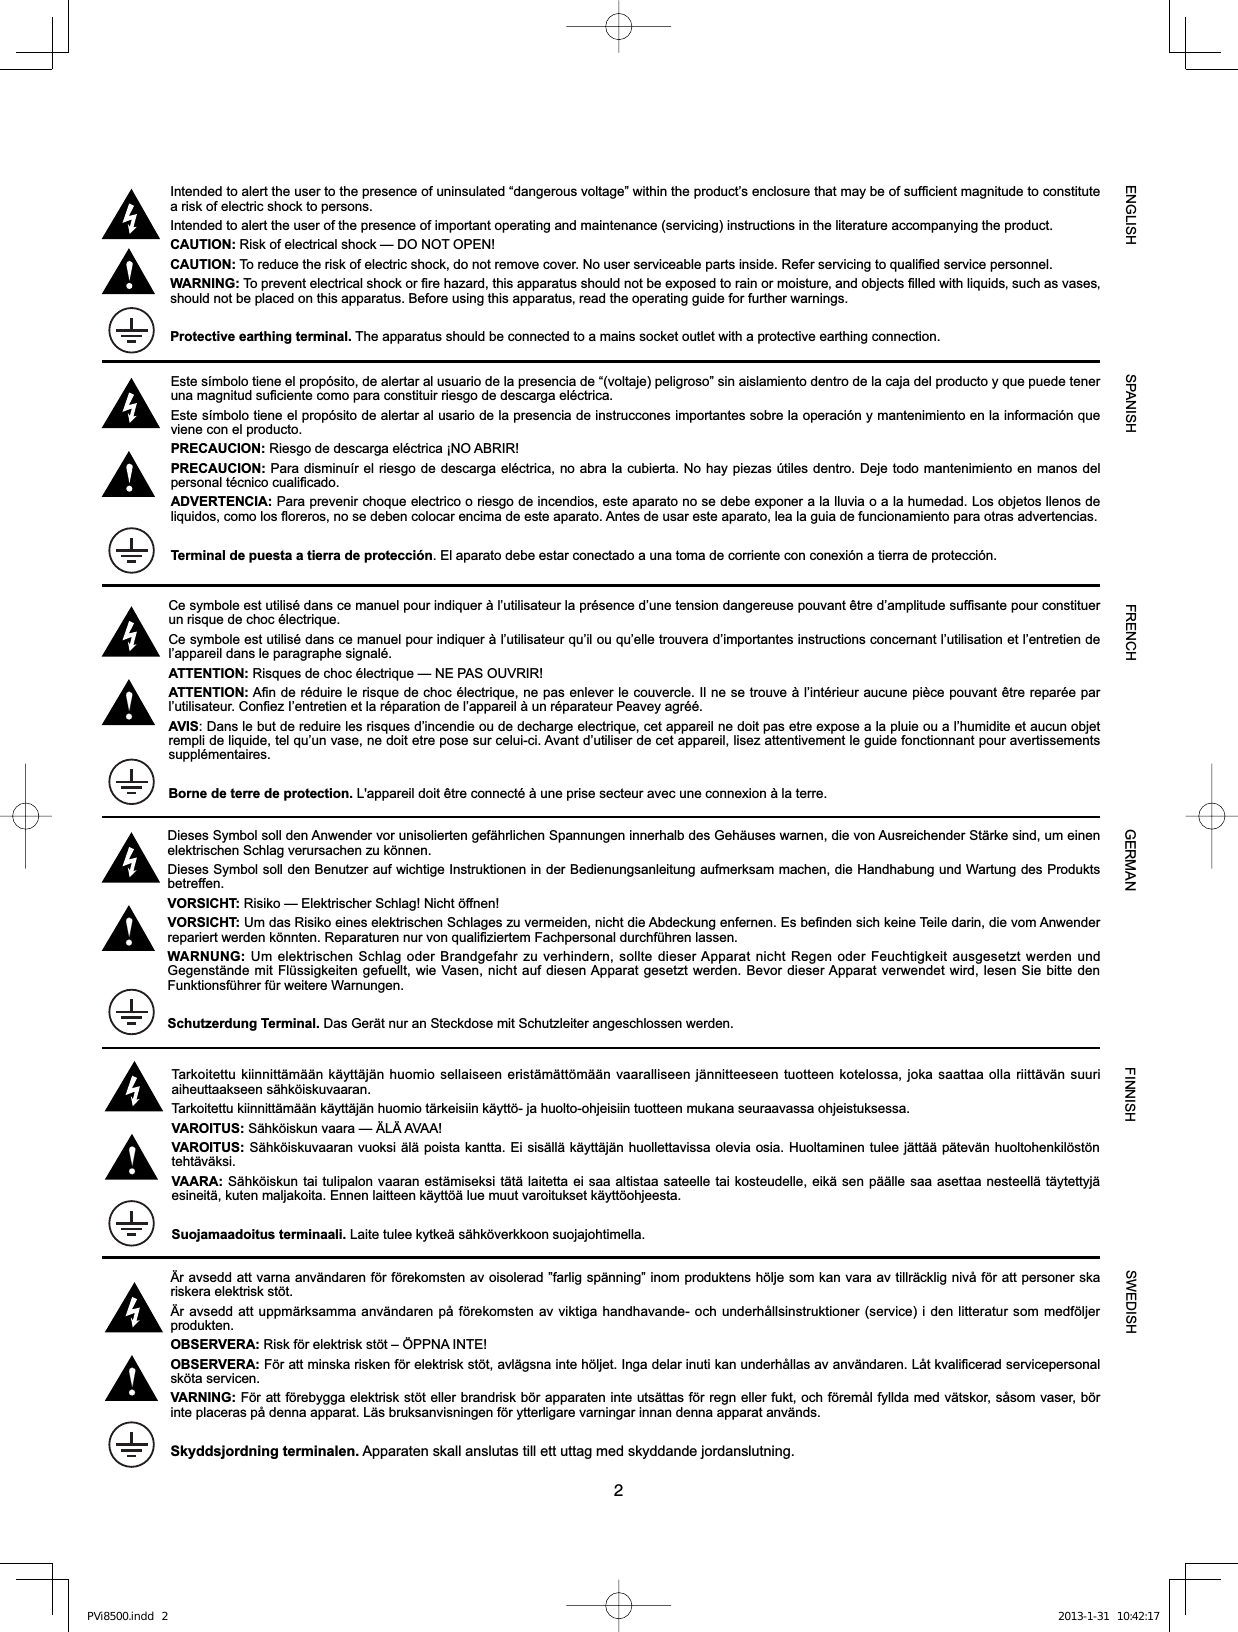 2,QWHQGHGWRDOHUWWKHXVHUWRWKHSUHVHQFHRIXQLQVXODWHG³GDQJHURXVYROWDJH´ZLWKLQWKHSURGXFW¶VHQFORVXUHWKDWPD\EHRIVXI¿FLHQWPDJQLWXGHWRFRQVWLWXWHa risk of electric shock to persons.Intended to alert the user of the presence of important operating and maintenance (servicing) instructions in the literature accompanying the product.CAUTION: Risk of electrical shock — DO NOT OPEN!CAUTION: 7RUHGXFHWKHULVNRIHOHFWULFVKRFNGRQRWUHPRYHFRYHU1RXVHUVHUYLFHDEOHSDUWVLQVLGH5HIHUVHUYLFLQJWRTXDOL¿HGVHUYLFHSHUVRQQHOWARNING:7RSUHYHQWHOHFWULFDOVKRFNRU¿UHKD]DUGWKLVDSSDUDWXVVKRXOGQRWEHH[SRVHGWRUDLQRUPRLVWXUHÃDQGREMHFWV¿OOHGZLWKOLTXLGVÃVXFKDVYDVHVÃVKRXOGQRWEHSODFHGRQWKLVDSSDUDWXV%HIRUHXVLQJWKLVDSSDUDWXVÃUHDGWKHRSHUDWLQJJXLGHIRUIXUWKHUZDUQLQJVProtective earthing terminal. The apparatus should be connected to a mains socket outlet with a protective earthing connection.SPANISHENGLISH FINNISHFRENCH SWEDISHGERMAN7DUNRLWHWWXNLLQQLWWlPllQNl\WWlMlQKXRPLRVHOODLVHHQHULVWlPlWW|PllQYDDUDOOLVHHQMlQQLWWHHVHHQWXRWWHHQNRWHORVVDMRNDVDDWWDDROODULLWWlYlQVXXULDLKHXWWDDNVHHQVlKN|LVNXYDDUDQ7DUNRLWHWWXNLLQQLWWlPllQNl\WWlMlQKXRPLRWlUNHLVLLQNl\WW|MDKXROWRRKMHLVLLQWXRWWHHQPXNDQDVHXUDDYDVVDRKMHLVWXNVHVVDVAROITUS: 6lKN|LVNXQYDDUD²b/b$9$$VAROITUS: 6lKN|LVNXYDDUDQYXRNVLlOlSRLVWDNDQWWD(LVLVlOOlNl\WWlMlQKXROOHWWDYLVVDROHYLDRVLD+XROWDPLQHQWXOHHMlWWllSlWHYlQKXROWRKHQNLO|VW|Qtehtäväksi.VAARA: 6lKN|LVNXQWDLWXOLSDORQYDDUDQHVWlPLVHNVLWlWlODLWHWWDHLVDDDOWLVWDDVDWHHOOHWDLNRVWHXGHOOHHLNlVHQSllOOHVDDDVHWWDDQHVWHHOOlWl\WHWW\MlHVLQHLWlNXWHQPDOMDNRLWD(QQHQODLWWHHQNl\WW|lOXHPXXWYDURLWXNVHWNl\WW|RKMHHVWDSuojamaadoitus terminaali./DLWHWXOHHN\WNHlVlKN|YHUNNRRQVXRMDMRKWLPHOOD&amp;HV\PEROHHVWXWLOLVpGDQVFHPDQXHOSRXULQGLTXHUjO¶XWLOLVDWHXUODSUpVHQFHG¶XQHWHQVLRQGDQJHUHXVHSRXYDQWrWUHG¶DPSOLWXGHVXI¿VDQWHSRXUFRQVWLWXHUun risque de choc électrique.Ce symbole est utilisé dans ce manuel pour indiquer à l’utilisateur qu’il ou qu’elle trouvera d’importantes instructions concernant l’utilisation et l’entretien de l’appareil dans le paragraphe signalé.ATTENTION:5LVTXHVGHFKRFpOHFWULTXH²1(3$62895,5ATTENTION:$¿QGHUpGXLUHOHULVTXHGHFKRFpOHFWULTXHQHSDVHQOHYHUOHFRXYHUFOH,OQHVHWURXYHjO¶LQWpULHXUDXFXQHSLqFHSRXYDQWrWUHUHSDUpHSDUO¶XWLOLVDWHXU&amp;RQ¿H],¶HQWUHWLHQHWODUpSDUDWLRQGHO¶DSSDUHLOjXQUpSDUDWHXU3HDYH\DJUppAVIS&apos;DQVOHEXWGHUHGXLUHOHVULVTXHVG¶LQFHQGLHRXGHGHFKDUJHHOHFWULTXHFHWDSSDUHLOQHGRLWSDVHWUHH[SRVHDODSOXLHRXDO¶KXPLGLWHHWDXFXQREMHWUHPSOLGHOLTXLGHWHOTX¶XQYDVHQHGRLWHWUHSRVHVXUFHOXLFL$YDQWG¶XWLOLVHUGHFHWDSSDUHLOOLVH]DWWHQWLYHPHQWOHJXLGHIRQFWLRQQDQWSRXUDYHUWLVVHPHQWVsupplémentaires.Borne de terre de protection./DSSDUHLOGRLWrWUHFRQQHFWpjXQHSULVHVHFWHXUDYHFXQHFRQQH[LRQjODWHUUHbUDYVHGGDWWYDUQDDQYlQGDUHQI|UI|UHNRPVWHQDYRLVROHUDG´IDUOLJVSlQQLQJ´LQRPSURGXNWHQVK|OMHVRPNDQYDUDDYWLOOUlFNOLJQLYnI|UDWWSHUVRQHUVNDULVNHUDHOHNWULVNVW|WbUDYVHGGDWWXSSPlUNVDPPDDQYlQGDUHQSnI|UHNRPVWHQDYYLNWLJDKDQGKDYDQGHRFKXQGHUKnOOVLQVWUXNWLRQHUVHUYLFHLGHQOLWWHUDWXUVRPPHGI|OMHUprodukten.OBSERVERA:5LVNI|UHOHNWULVNVW|W±g331$,17(OBSERVERA:)|UDWWPLQVNDULVNHQI|UHOHNWULVNVW|WDYOlJVQDLQWHK|OMHW,QJDGHODULQXWLNDQXQGHUKnOODVDYDQYlQGDUHQ/nWNYDOL¿FHUDGVHUYLFHSHUVRQDOVN|WDVHUYLFHQVARNING:)|UDWWI|UHE\JJDHOHNWULVNVW|WHOOHUEUDQGULVNE|UDSSDUDWHQLQWHXWVlWWDVI|UUHJQHOOHUIXNWRFKI|UHPnOI\OOGDPHGYlWVNRUVnVRPYDVHUE|ULQWHSODFHUDVSnGHQQDDSSDUDW/lVEUXNVDQYLVQLQJHQI|U\WWHUOLJDUHYDUQLQJDULQQDQGHQQDDSSDUDWDQYlQGVSkyddsjordning terminalen.$SSDUDWHQVNDOODQVOXWDVWLOOHWWXWWDJPHGVN\GGDQGHMRUGDQVOXWQLQJDieses Symbol soll den Anwender vor unisolierten gefährlichen Spannungen innerhalb des Gehäuses warnen, die von Ausreichender Stärke sind, um einen HOHNWULVFKHQ6FKODJYHUXUVDFKHQ]XN|QQHQ&apos;LHVHV6\PEROVROOGHQ%HQXW]HUDXIZLFKWLJH,QVWUXNWLRQHQLQGHU%HGLHQXQJVDQOHLWXQJDXIPHUNVDPPDFKHQGLH+DQGKDEXQJXQG:DUWXQJGHV3URGXNWVbetreffen.VORSICHT:5LVLNR²(OHNWULVFKHU6FKODJ1LFKW|IIQHQVORSICHT:8PGDV5LVLNRHLQHVHOHNWULVFKHQ6FKODJHV]XYHUPHLGHQQLFKWGLH$EGHFNXQJHQIHUQHQ(VEH¿QGHQVLFKNHLQH7HLOHGDULQGLHYRP$QZHQGHUUHSDULHUWZHUGHQN|QQWHQ5HSDUDWXUHQQXUYRQTXDOL¿]LHUWHP)DFKSHUVRQDOGXUFKIKUHQODVVHQWARNUNG:8PHOHNWULVFKHQ6FKODJRGHU%UDQGJHIDKU]XYHUKLQGHUQVROOWHGLHVHU$SSDUDWQLFKW5HJHQRGHU)HXFKWLJNHLWDXVJHVHW]WZHUGHQXQG*HJHQVWlQGHPLW)OVVLJNHLWHQJHIXHOOWZLH9DVHQQLFKWDXIGLHVHQ$SSDUDWJHVHW]WZHUGHQ%HYRUGLHVHU$SSDUDWYHUZHQGHWZLUGOHVHQ6LHELWWHGHQ)XQNWLRQVIKUHUIUZHLWHUH:DUQXQJHQSchutzerdung Terminal.&apos;DV*HUlWQXUDQ6WHFNGRVHPLW6FKXW]OHLWHUDQJHVFKORVVHQZHUGHQ(VWHVtPERORWLHQHHOSURSyVLWRGHDOHUWDUDOXVXDULRGHODSUHVHQFLDGH³YROWDMHSHOLJURVR´VLQDLVODPLHQWRGHQWURGHODFDMDGHOSURGXFWR\TXHSXHGHWHQHUXQDPDJQLWXGVX¿FLHQWHFRPRSDUDFRQVWLWXLUULHVJRGHGHVFDUJDHOpFWULFDEste símbolo tiene el propósito de alertar al usario de la presencia de instruccones importantes sobre la operación y mantenimiento en la información que viene con el producto.PRECAUCION: Riesgo de descarga eléctrica ¡NO ABRIR!PRECAUCION:3DUDGLVPLQXtUHOULHVJRGHGHVFDUJDHOpFWULFDQRDEUDODFXELHUWD1RKD\SLH]DV~WLOHVGHQWUR&apos;HMHWRGRPDQWHQLPLHQWRHQPDQRVGHOSHUVRQDOWpFQLFRFXDOL¿FDGRADVERTENCIA:3DUDSUHYHQLUFKRTXHHOHFWULFRRULHVJRGHLQFHQGLRVHVWHDSDUDWRQRVHGHEHH[SRQHUDODOOXYLDRDODKXPHGDG/RVREMHWRVOOHQRVGHOLTXLGRVFRPRORVÀRUHURVQRVHGHEHQFRORFDUHQFLPDGHHVWHDSDUDWR$QWHVGHXVDUHVWHDSDUDWROHDODJXLDGHIXQFLRQDPLHQWRSDUDRWUDVDGYHUWHQFLDVTerminal de puesta a tierra de protección(ODSDUDWRGHEHHVWDUFRQHFWDGRDXQDWRPDGHFRUULHQWHFRQFRQH[LyQDWLHUUDGHSURWHFFLyQPVi8500.indd   2 2013-1-31   10:42:17